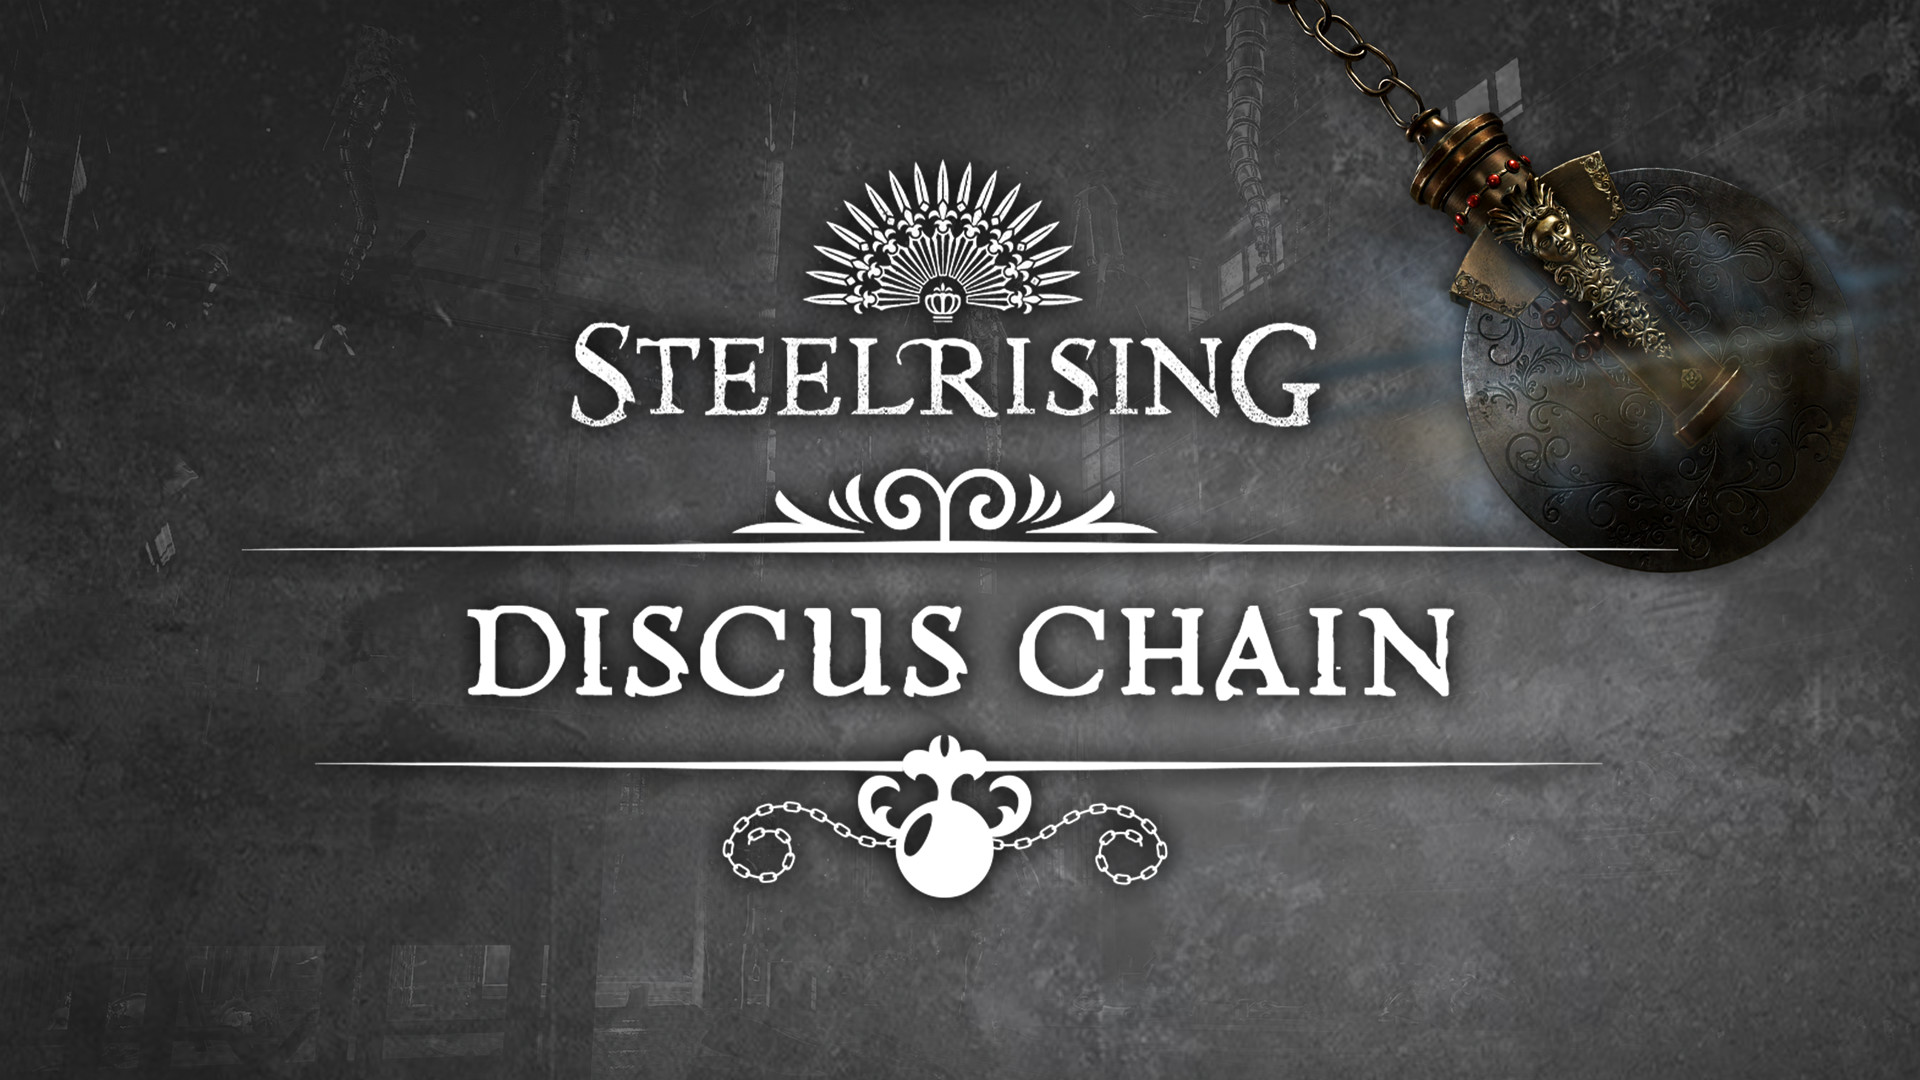 Steelrising - Discus Chain DLC Steam CD Key